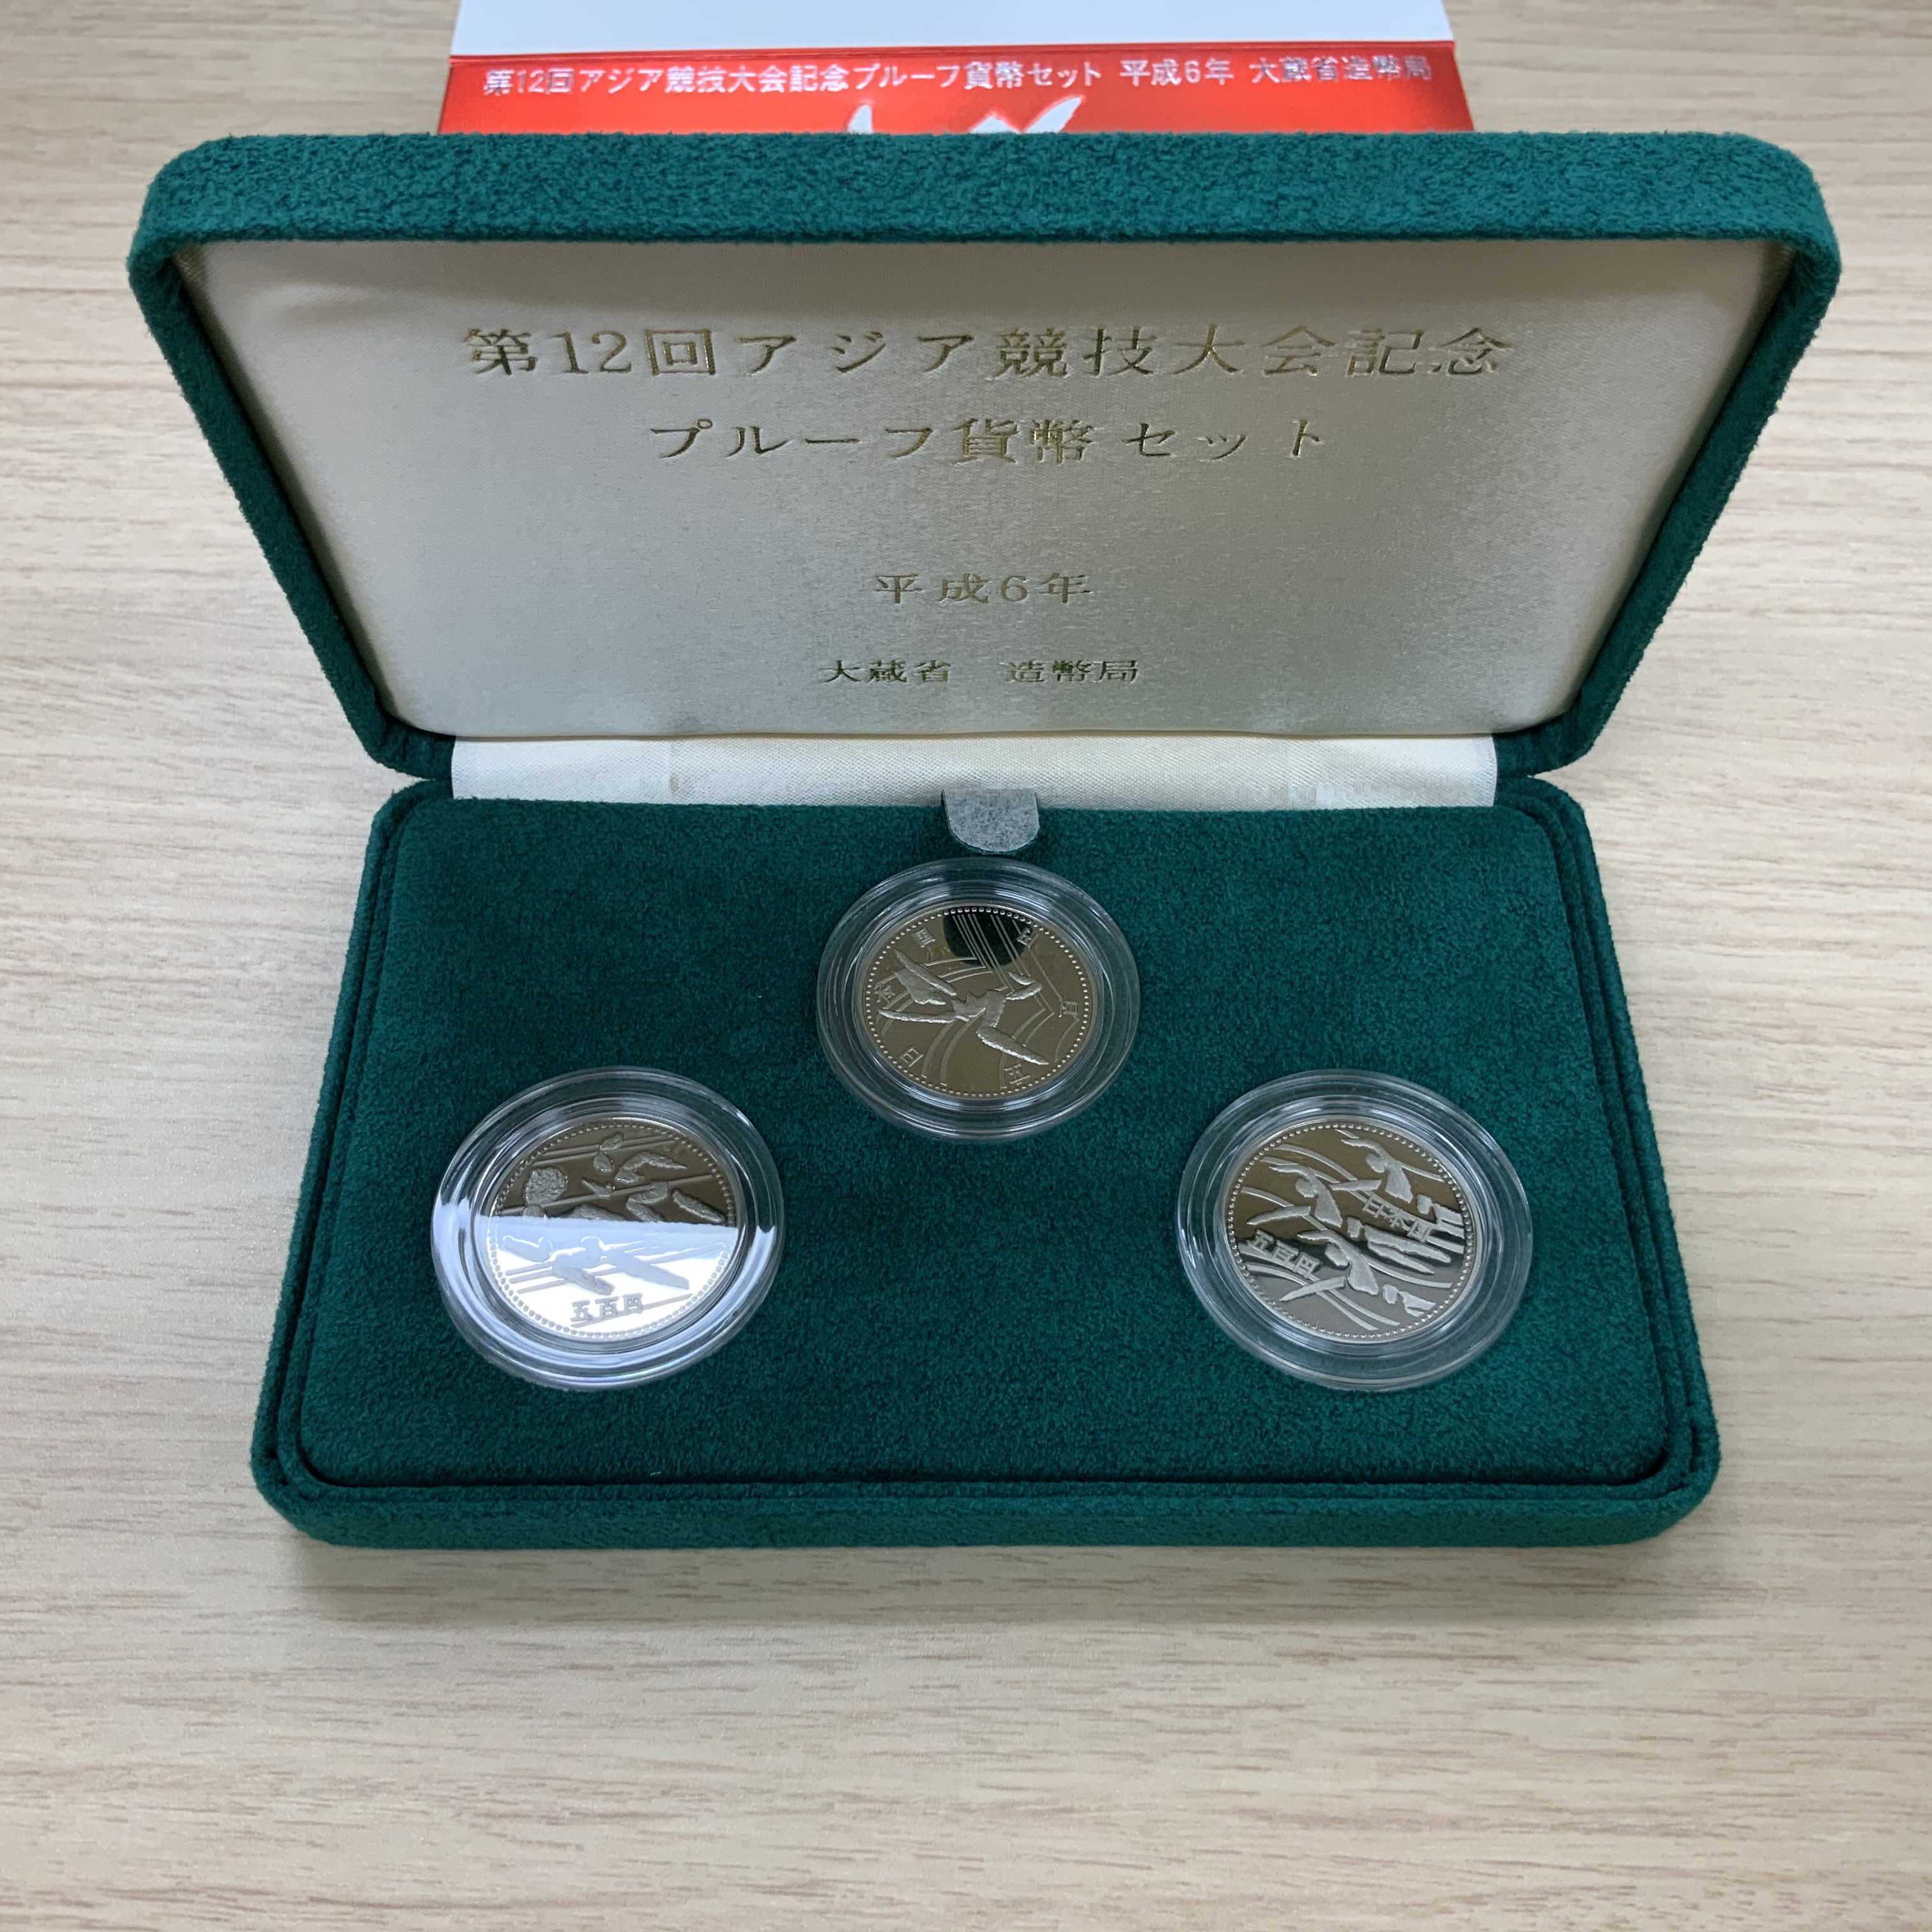 日本-Japan 第12回アジア競技大会記念貨幣発行記念 500円 3点セット